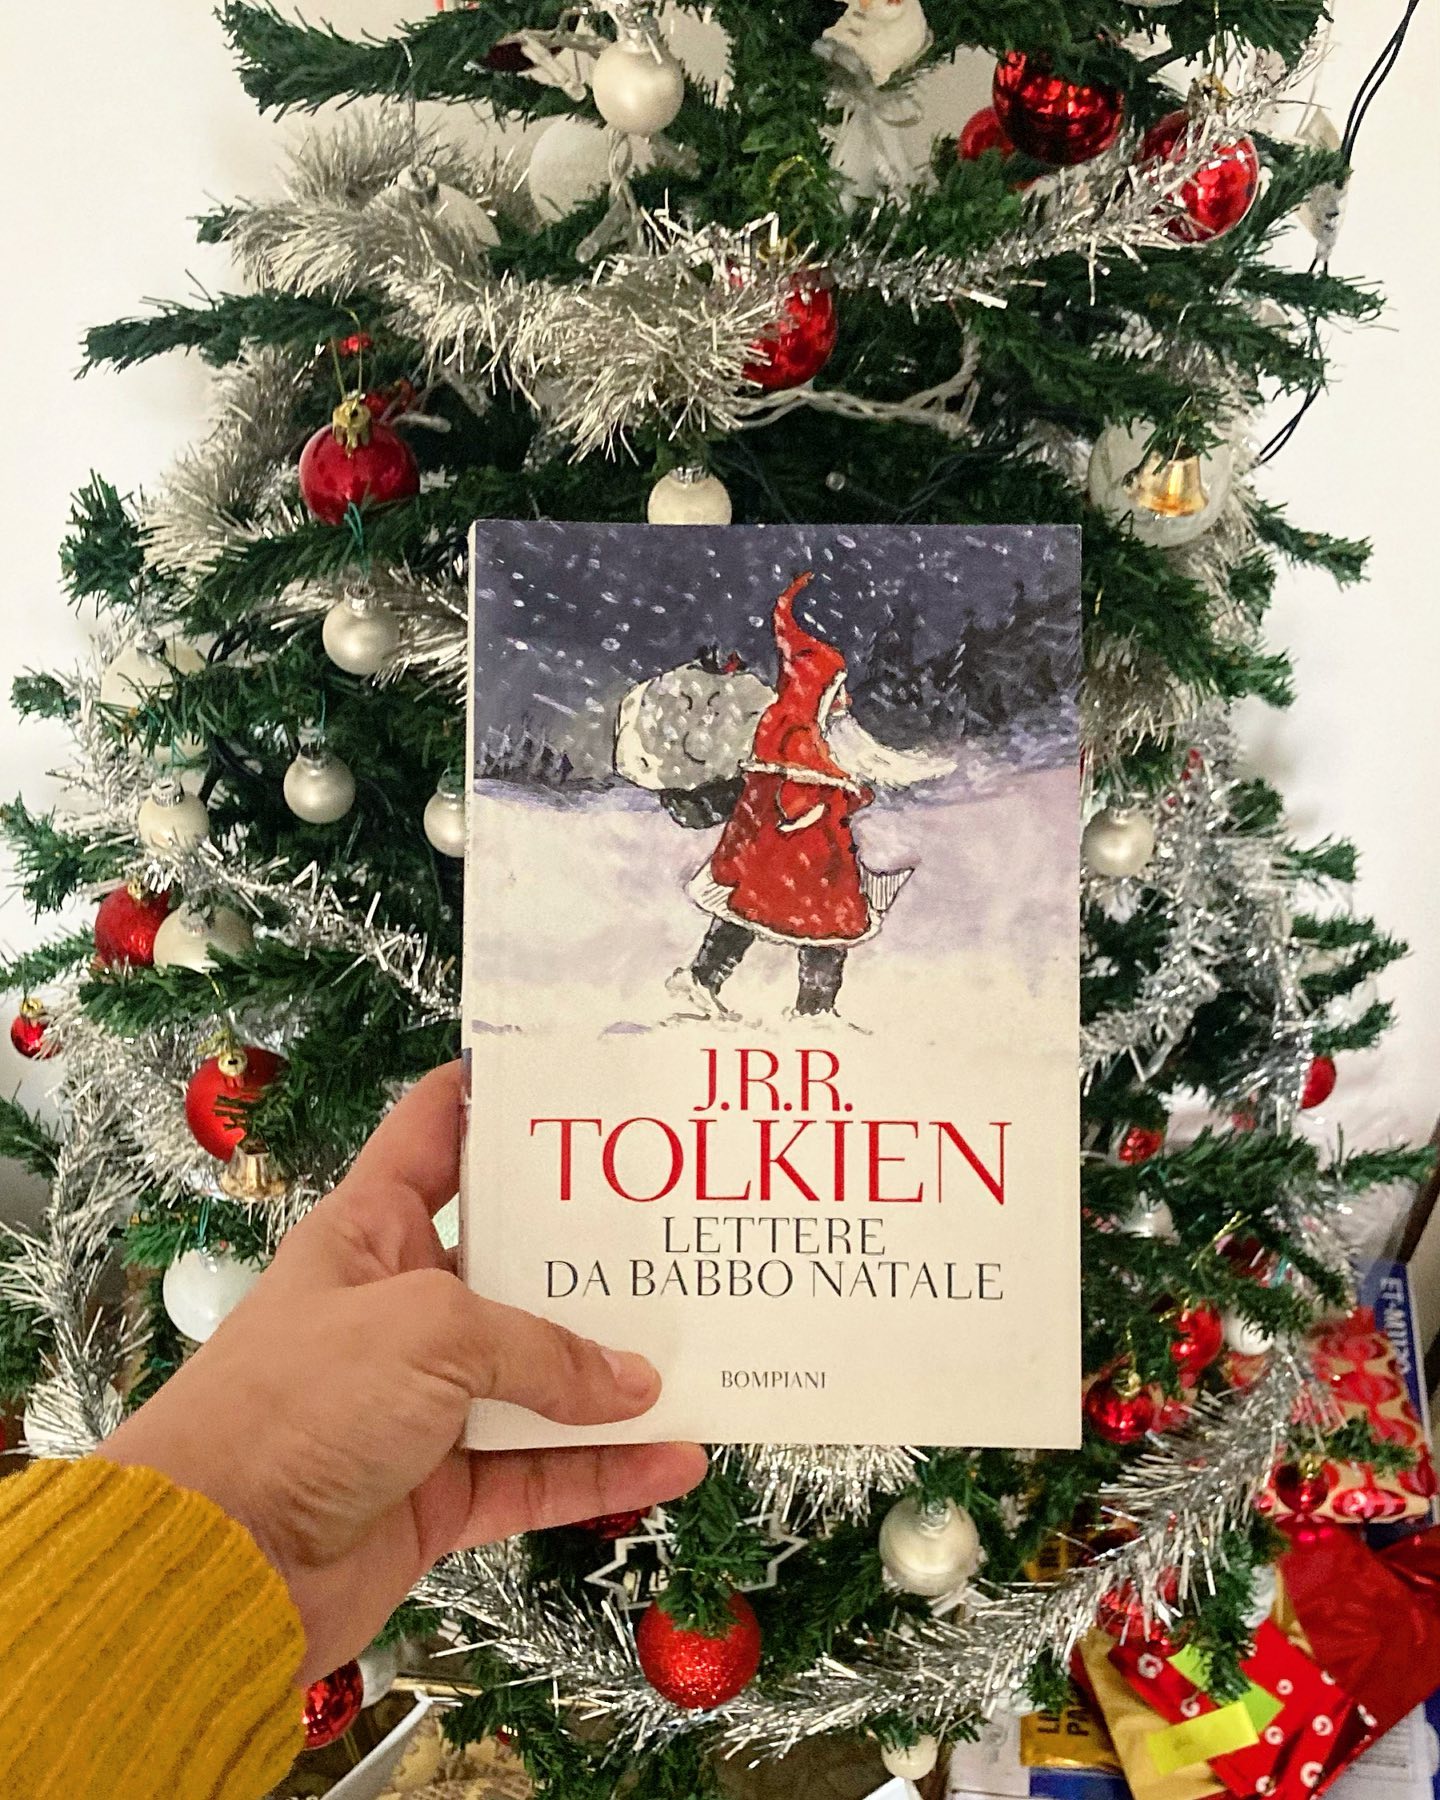 È mancato un po’ di Natale nel mio profilo quest’anno. E io il Natale lo amo, è risaputo.
Ma in compenso nella vita fuori da Instagram il Natale è stato ben presente, dopo tre anni lontana dai miei cari, mi sto godendo il clima festivo e io mio amore per il Natale. 
Come ogni anno però ho fatto una lettura a tema, e quest’anno è toccato a Lettere da Babbo Natale di Tolkien, che è stata davvero una coccola (ed è stata anche l’ultima lettura per qualche del #clubdelracconto ❤️).

Questo libro è una raccolta delle lettere Tolkien, scrisse ai suoi figli per più di 20 anni fingendosi il leggendario Nicola che dal Polo Nord ogni anno porta i regali ai bambini di tutto il mondo.

È un librino colorato e corredato dalle foto dei disegni e delle lettere originali che Tolkien scriveva ai figli, dove cambiava stile di scrittura (anche visivamente) per i vari protagonisti delle storie che raccontava ai suoi bambini.

Ancora una volta l’autore dimostra avere una fantasia sconfinata, e attraverso la testimonianza di queste lettere ce la mostra anche nella sua vita privata, nel voler rendere speciale il Natale ai suoi figli.

Lettere a Babbo Natale dunque immerge totalmente nelle atmosfere natalizie, portando magia e facendo riaffiorare quei bellissimi ricordi di attese frementi le notti prima di Natale di quando eravamo bambini: Tolkien si inventa tutta la vita di Babbo Natale, i suoi assistenti e aiutanti e anche le sue personali battaglie contro i goblin per esempio. Usa anche il suo amico barbuto come voce per far passare alcuni messaggi, in momenti come per esempio quello della seconda guerra mondiale in cui era difficile a pensare alle cose materiali, e quindi ha usato il suo alter ego anche per in un certo modo educare i suoi figli.

Insomma, è un libro he consiglio assolutamente da leggere in questo periodo dell’anno perché trasmette tutto lo spirito e la gioia di questa festività. Leggendolo non ho potuto che pensare che avrei voluto un papà come Tolkien da bambina, perché le sue lettere sono davvero di una dolcezza infinita.

Leggetelo dunque, e non ve ne pentirete.

Io per ora vi saluto e vi auguro di passare una splendida vigilia di Natale🎄❤️.